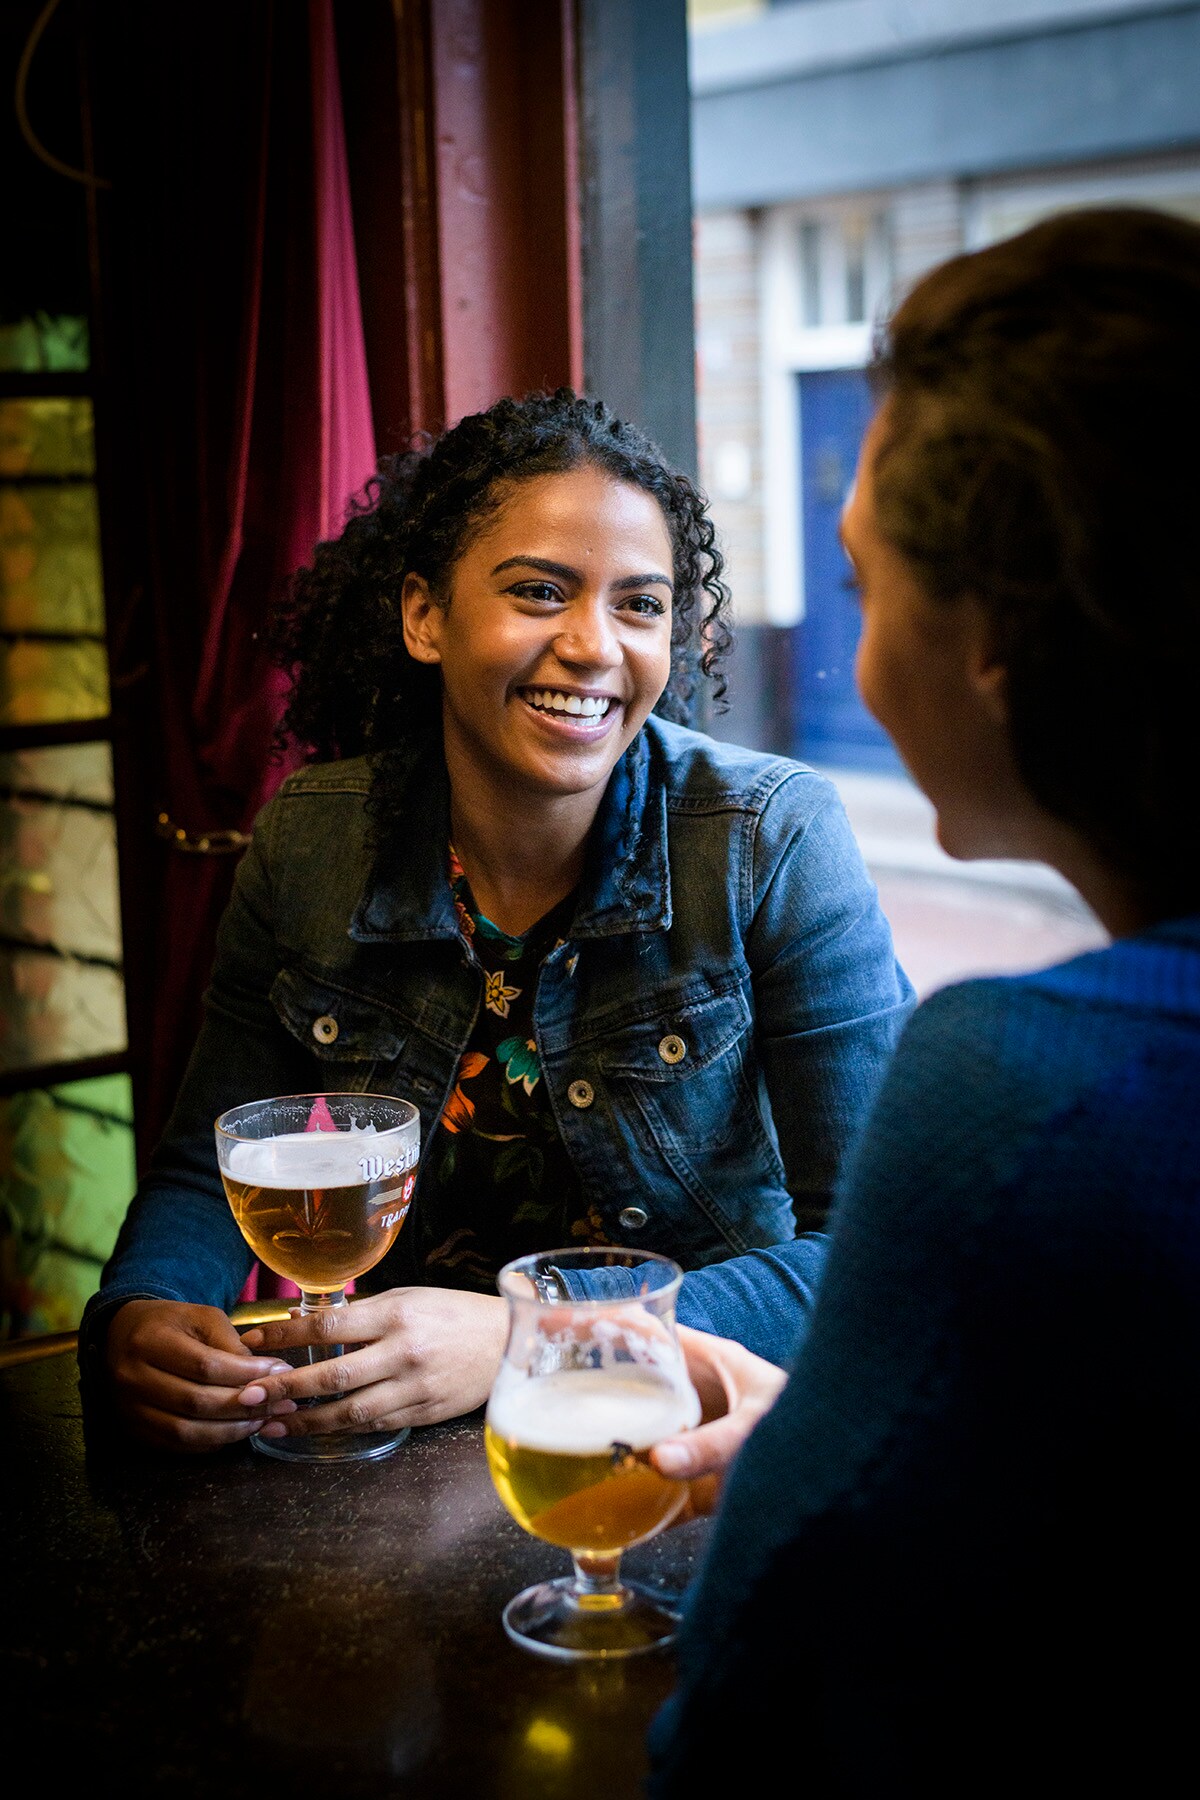 Nederland, Den Haag, 24-01-'18; Een groep vrienden drinkt samen een biertje in een cafe.Foto: Kees van de Veen